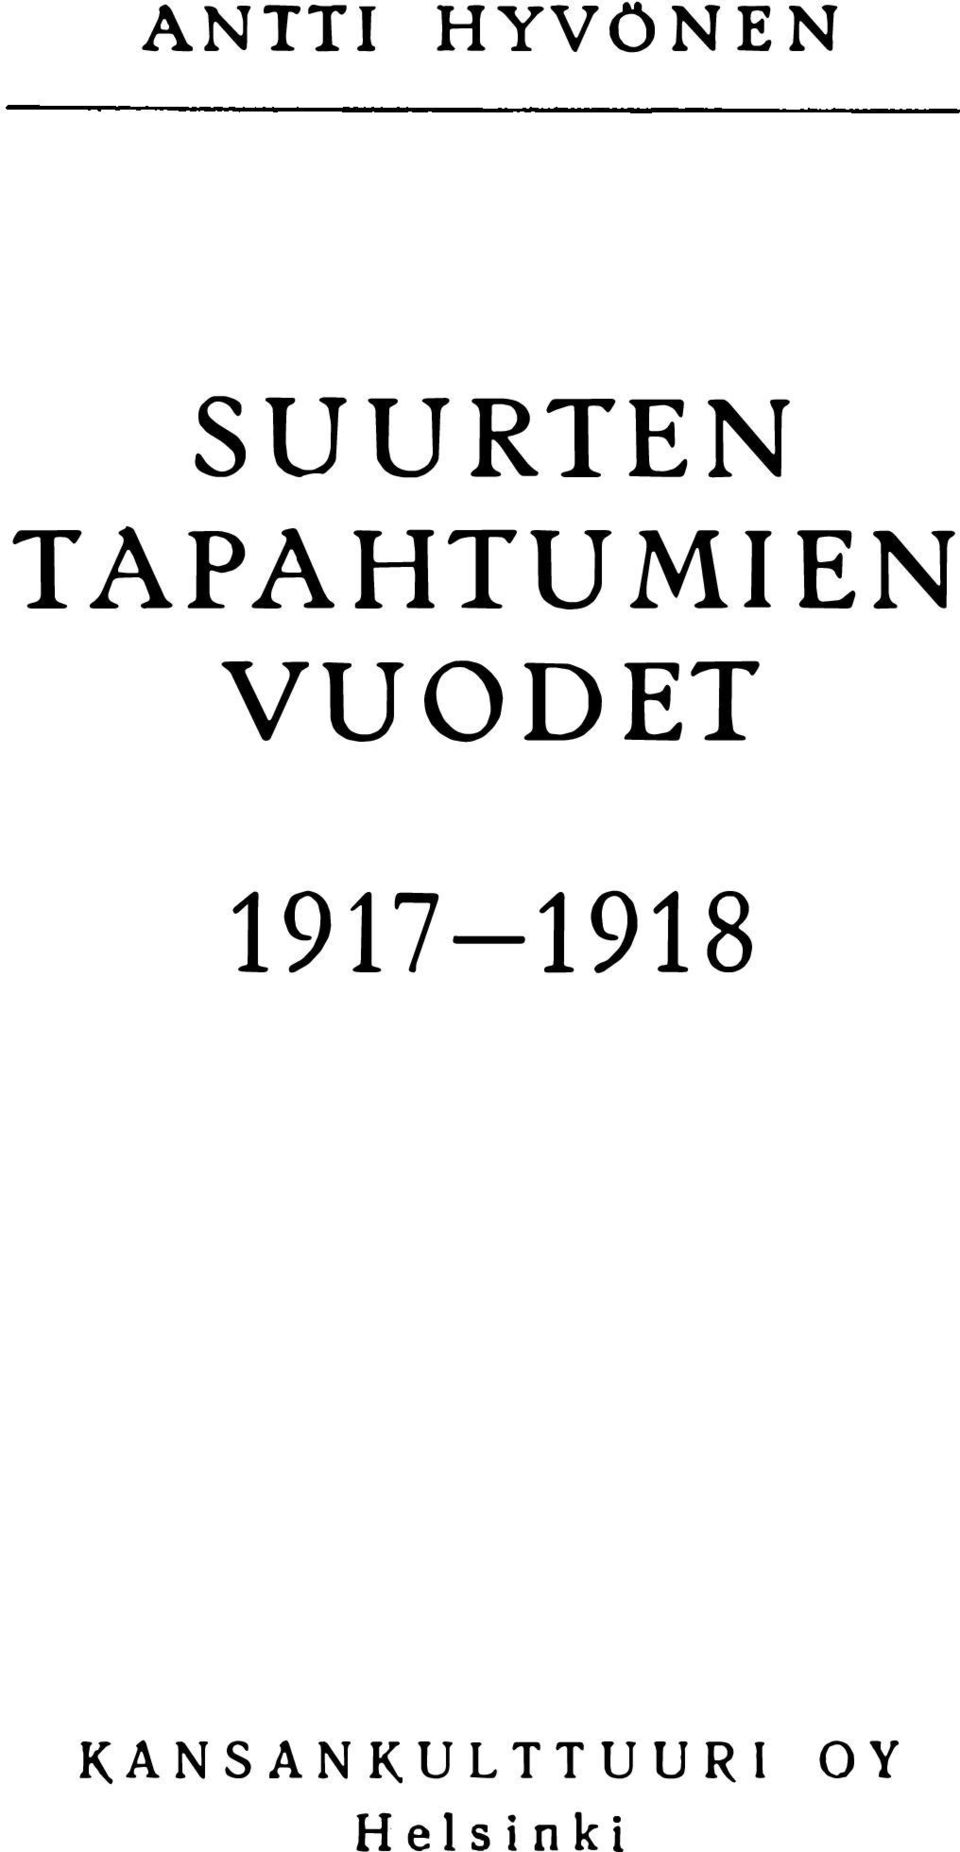 VUODET 1917-1918